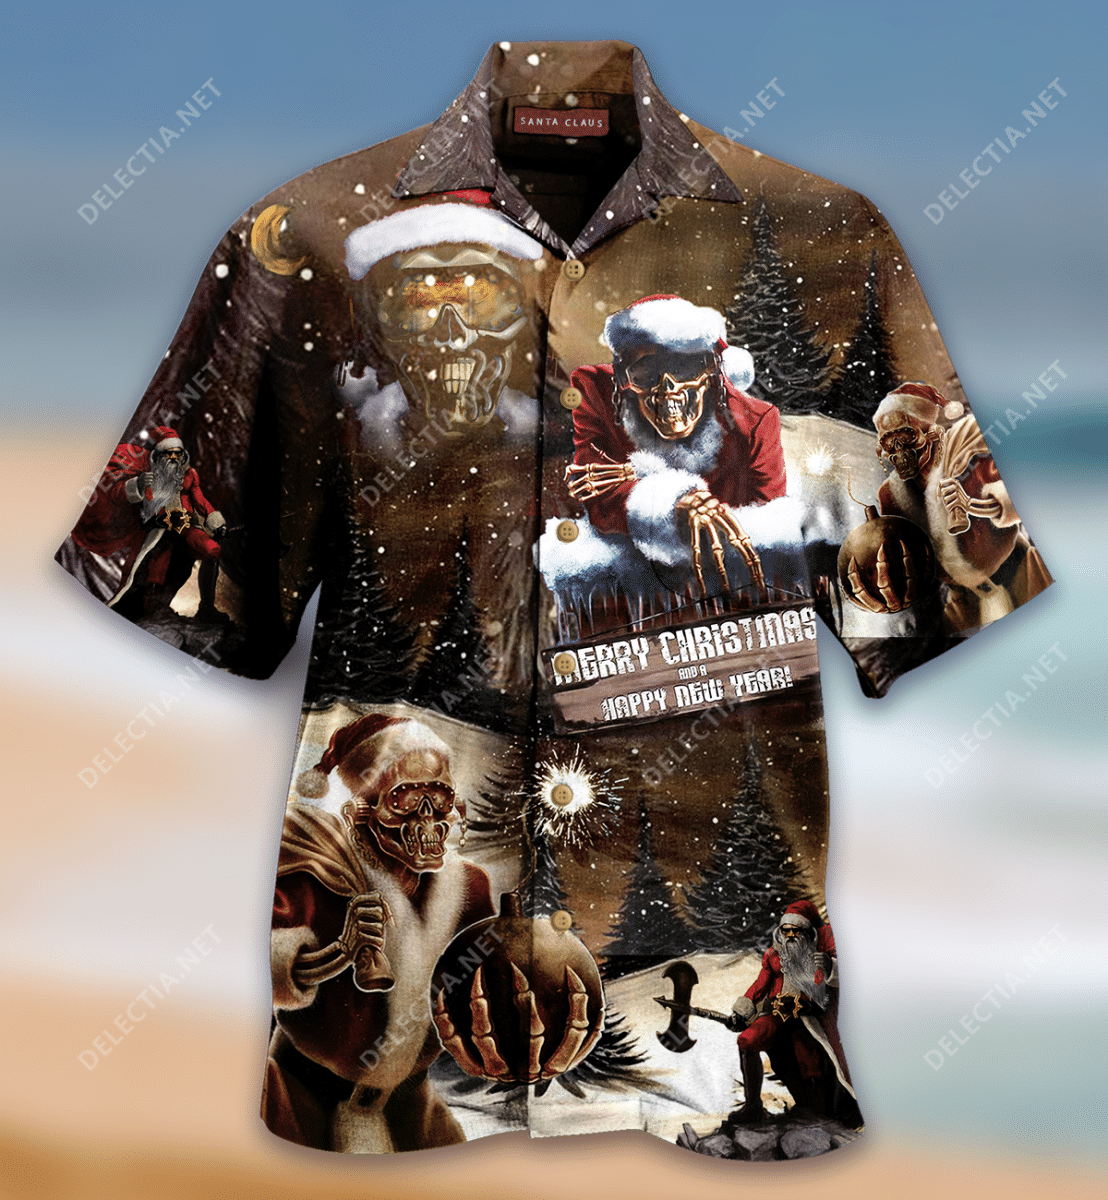 kurobase-all-i-want-for-christmas-is-santa-claus-hawaiian-shirt.png